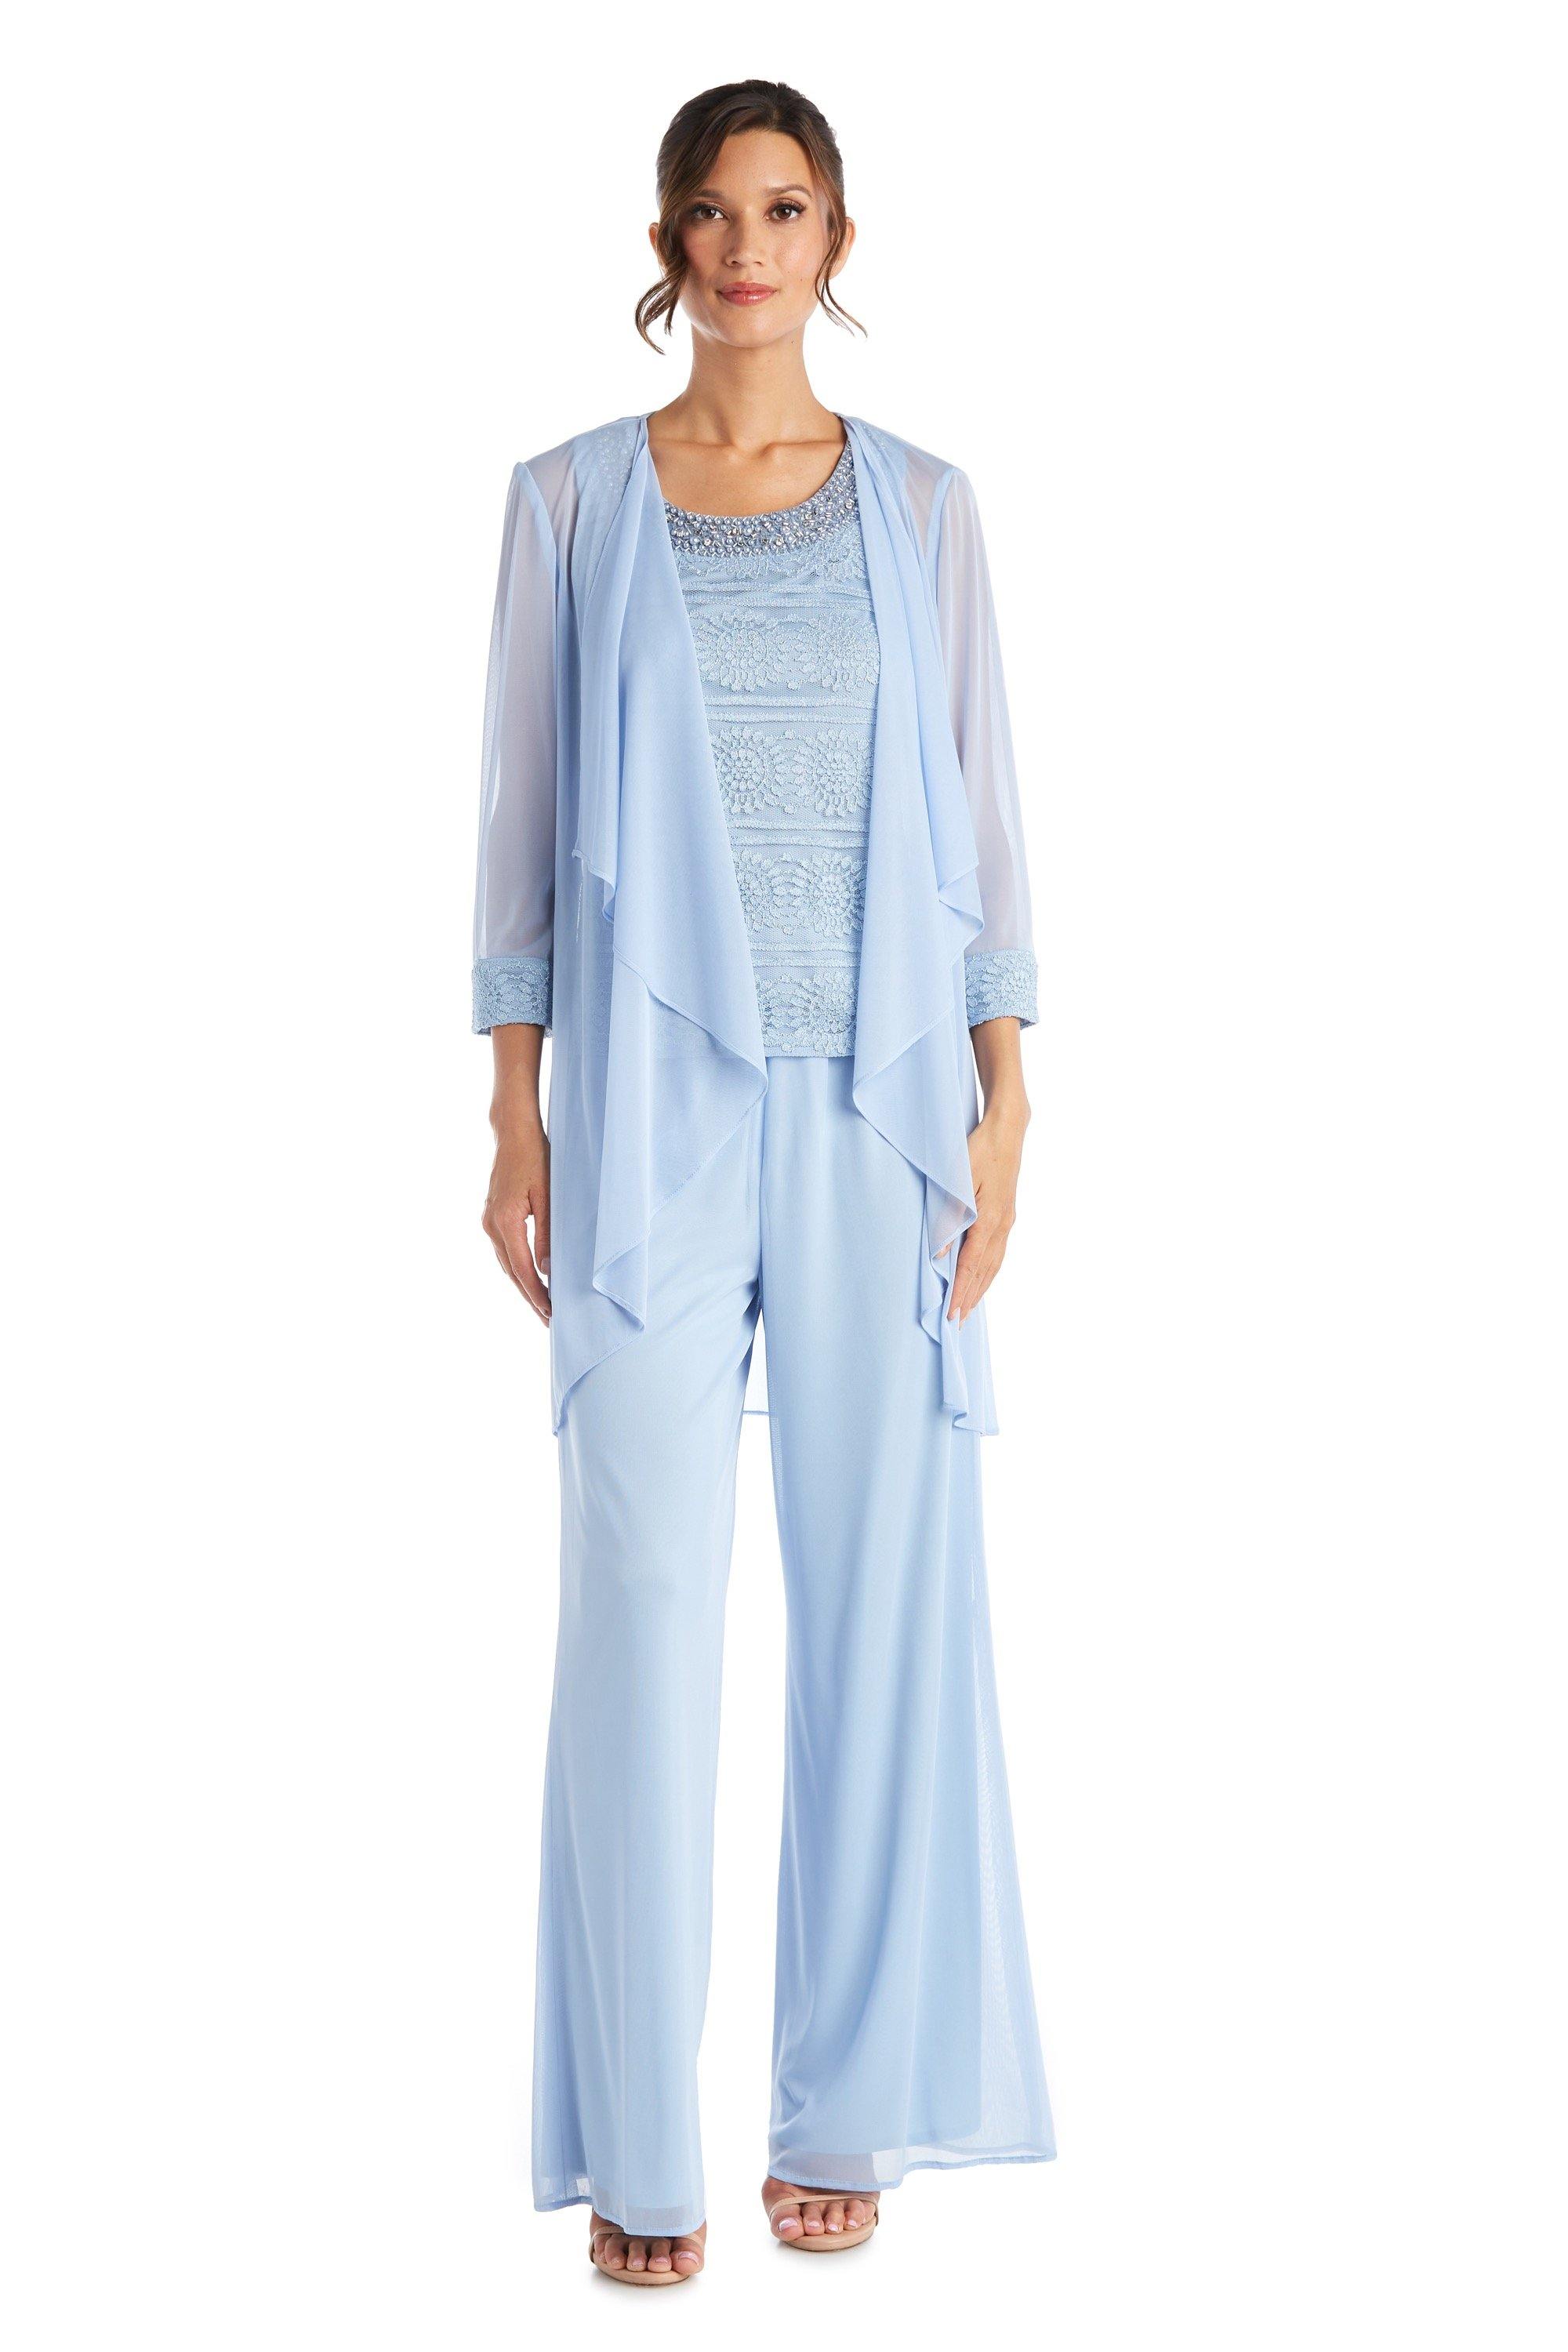 R&M Richards Petite Beaded Lace Pant Suit 7008P | The Dress Outlet